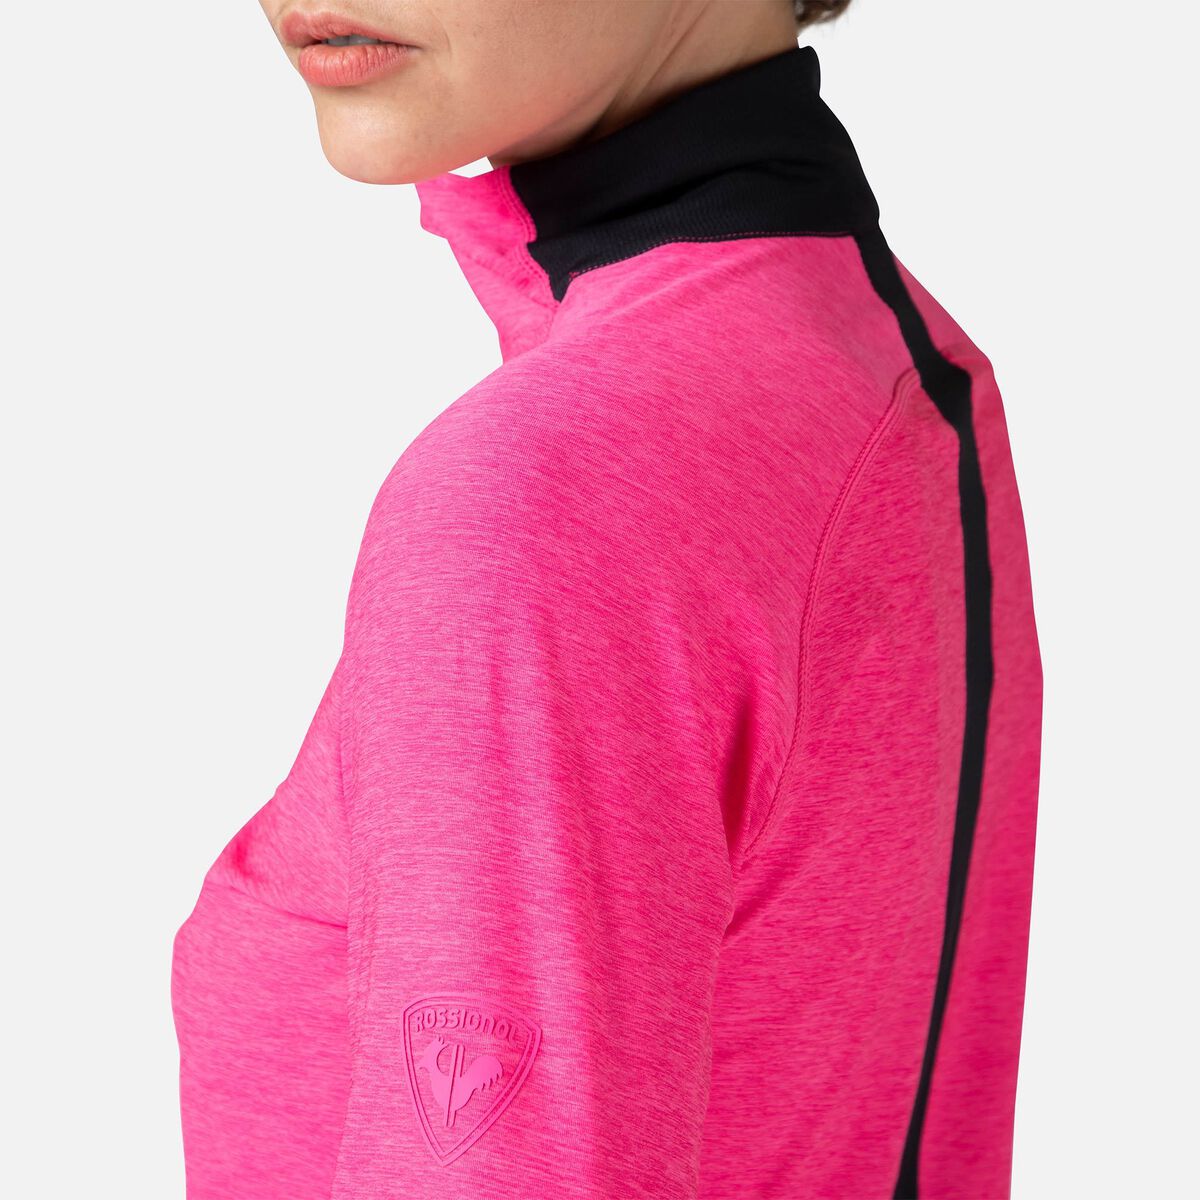 Rossignol Melierter Wanderpullover mit halblangem Reißverschluss für Damen pinkpurple